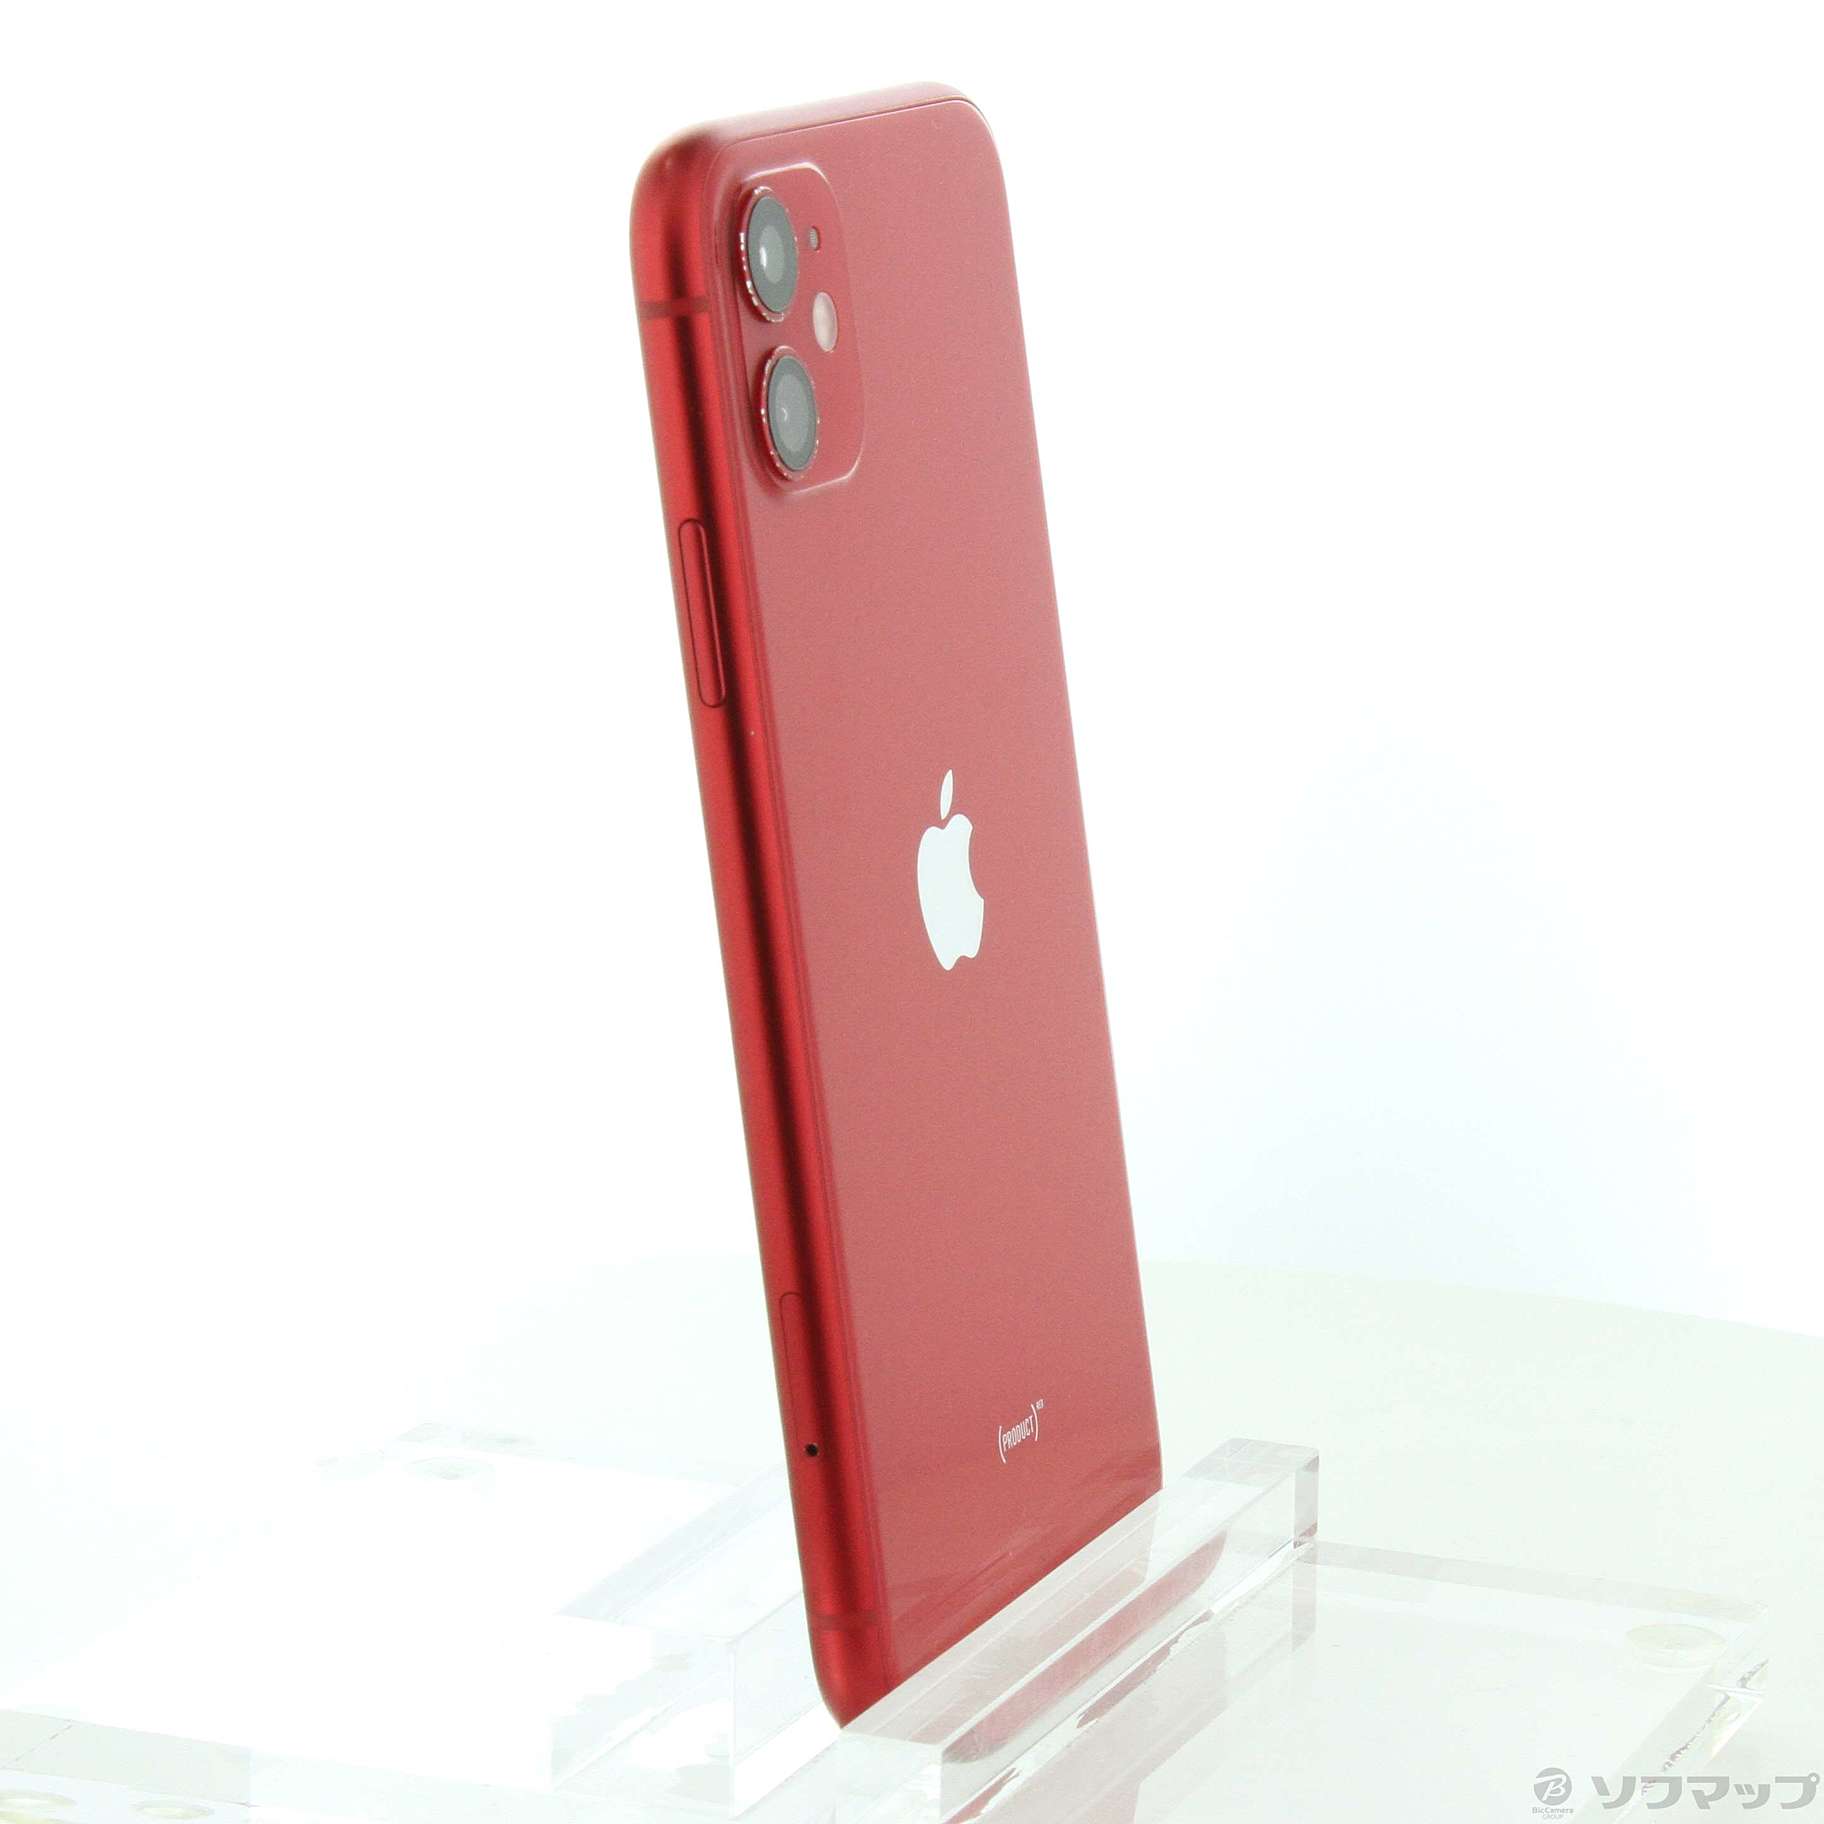 apple iPhone11 Red レッド 256GB SIM フリー 付属品 - スマートフォン 